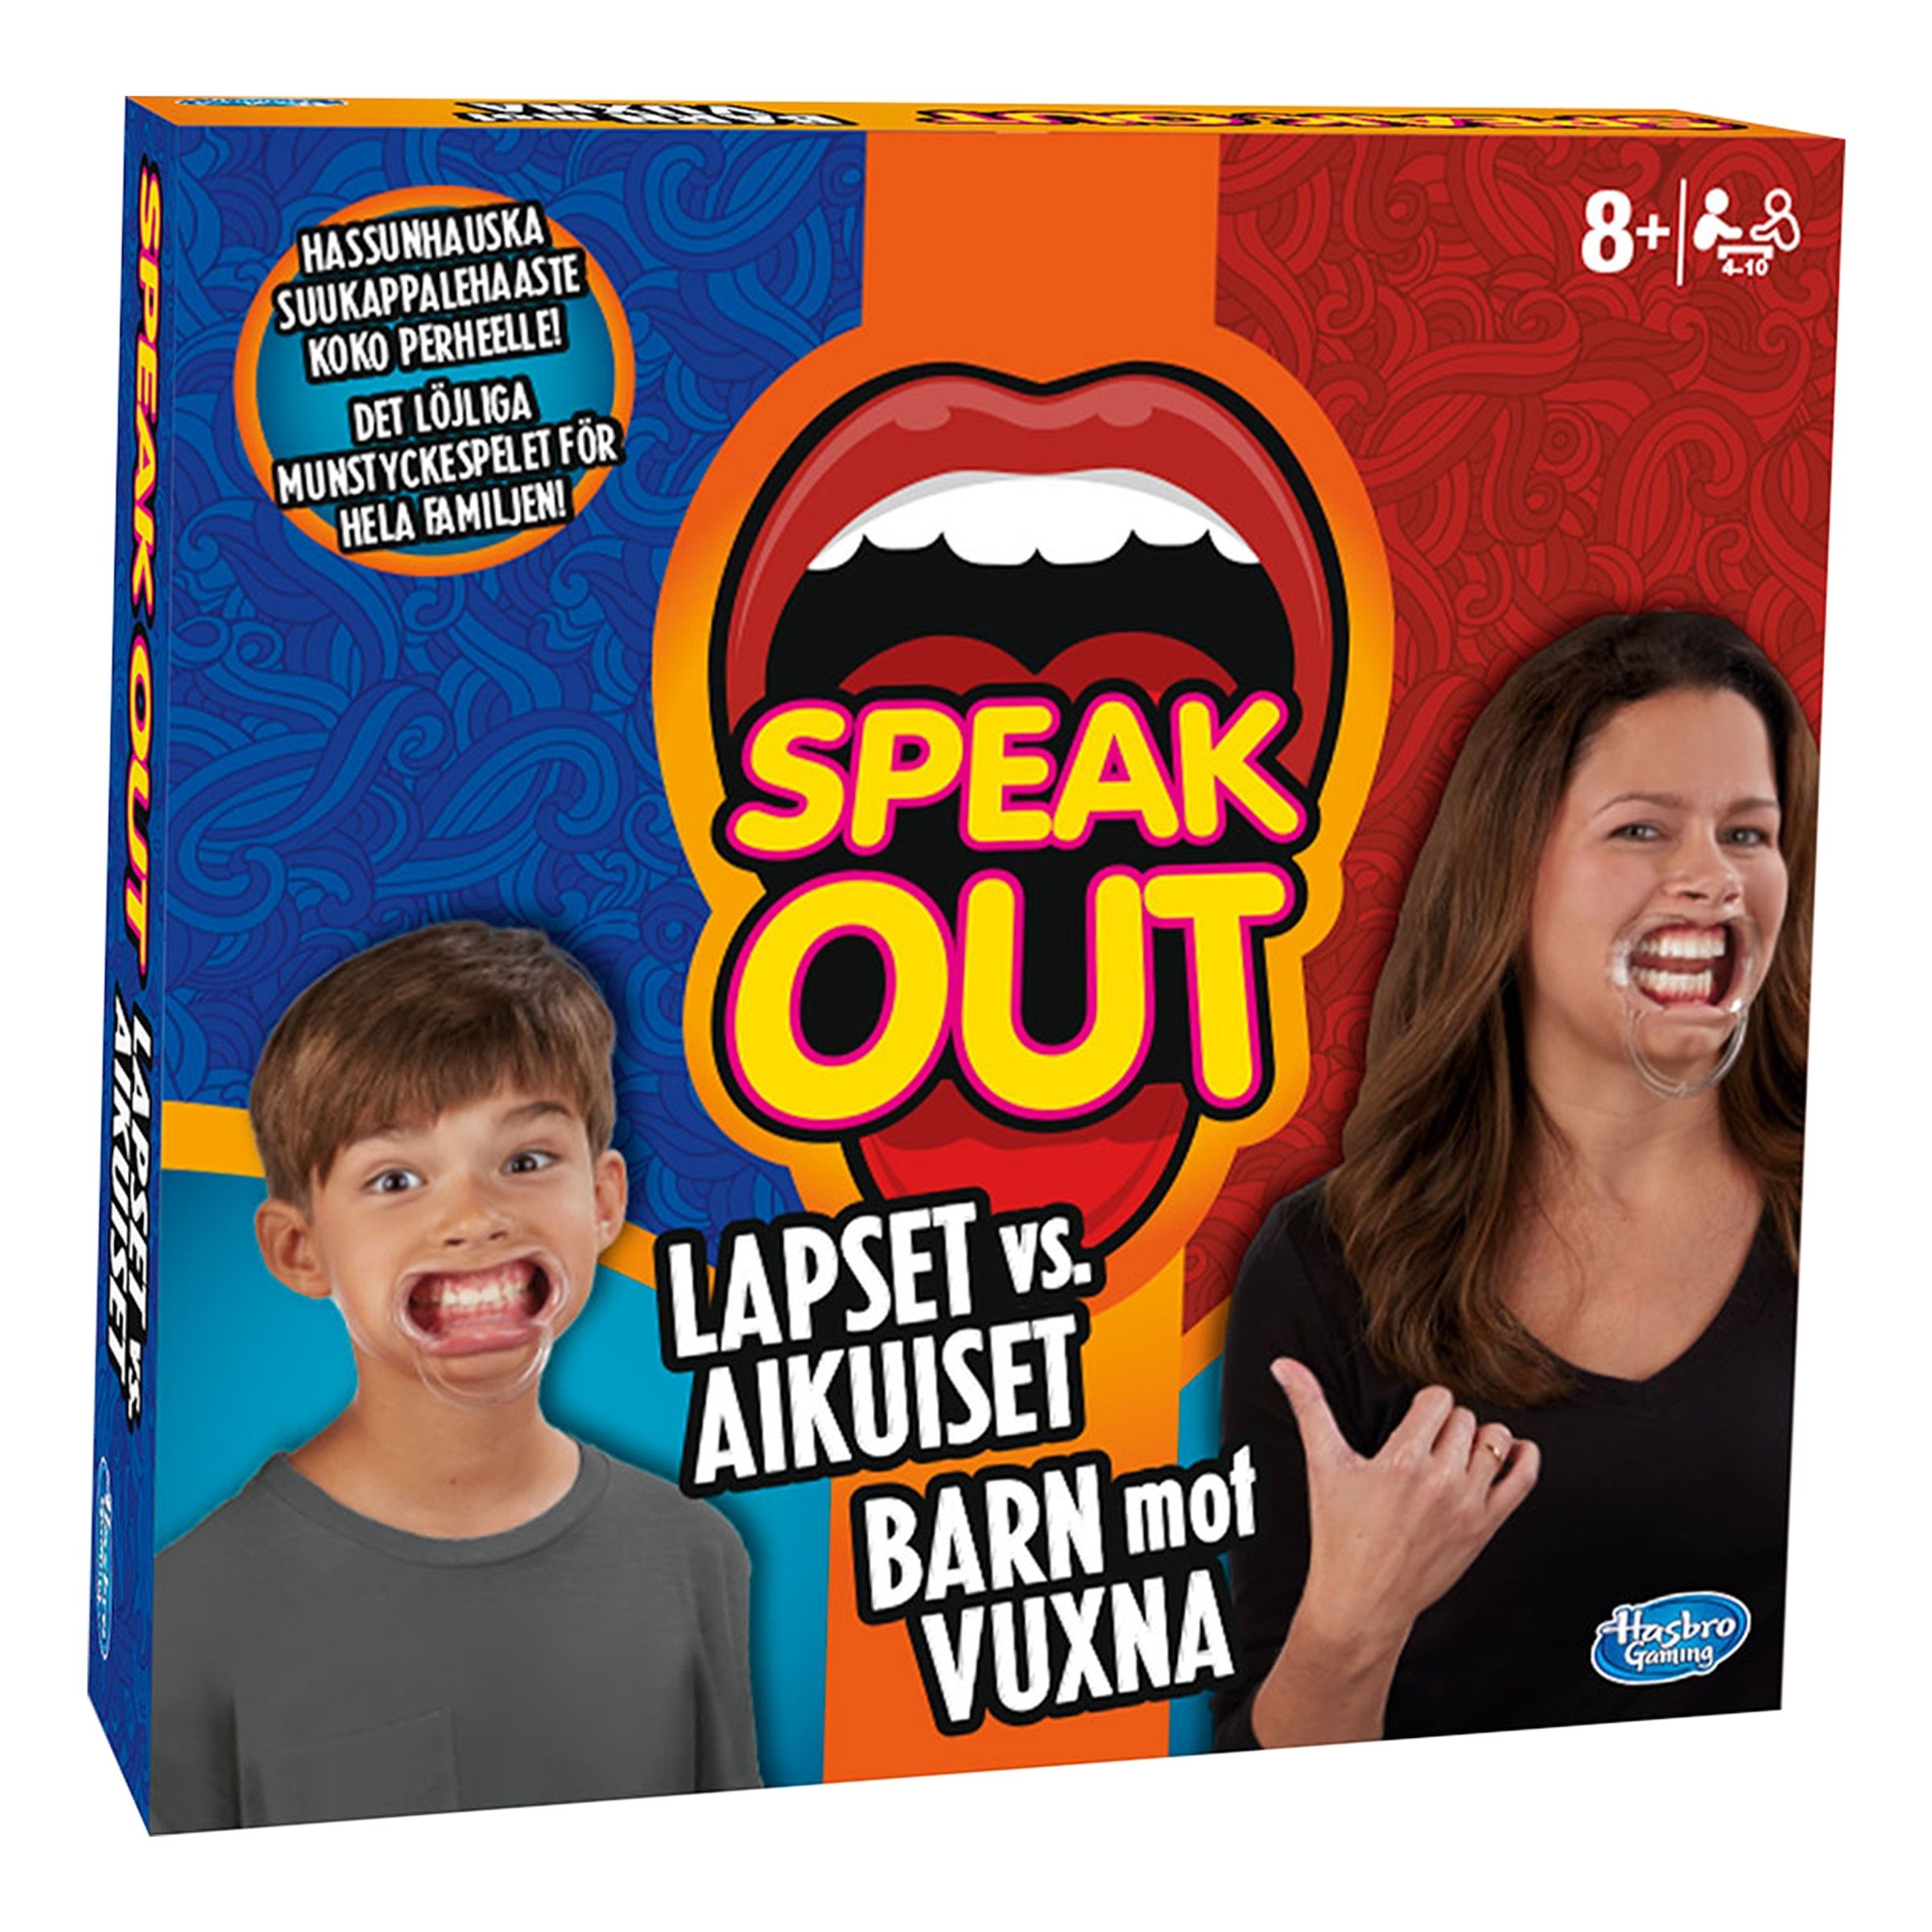 Speak Out Kids Vs Parents